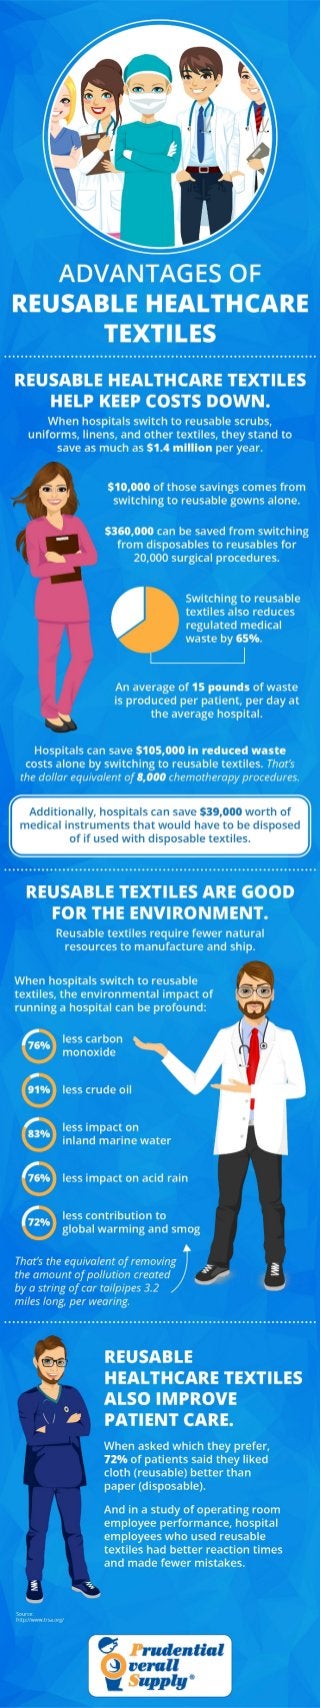 Advantages of Reusable Healthcare Textiles